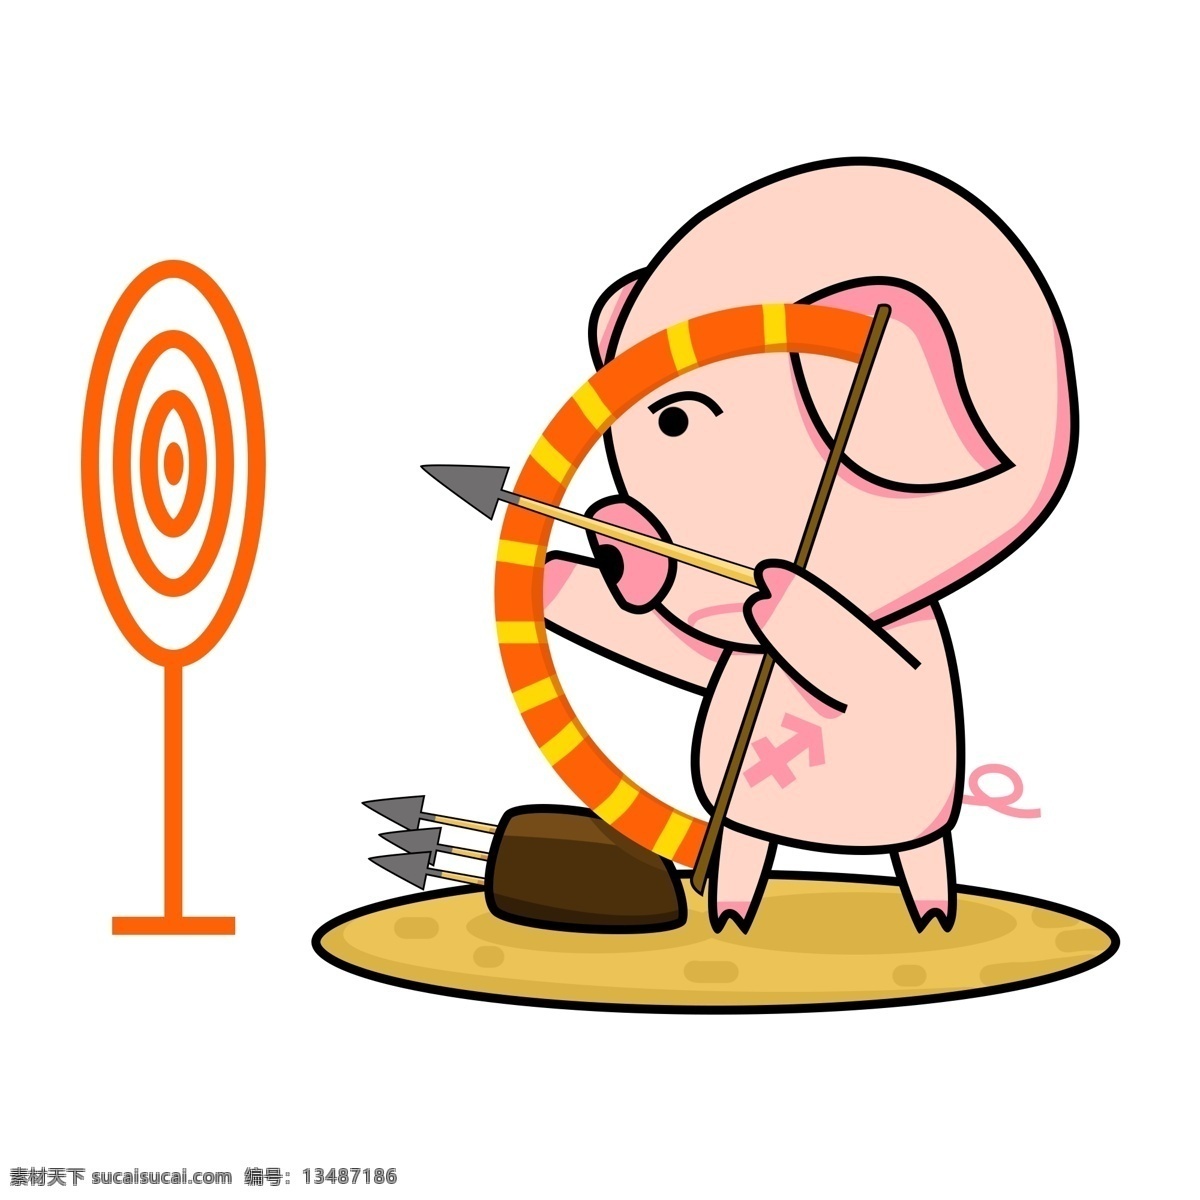 射手 座 小 猪 射箭 形象 商用 箭靶 射击 射手座 星座 小猪射箭 可爱小猪 手绘